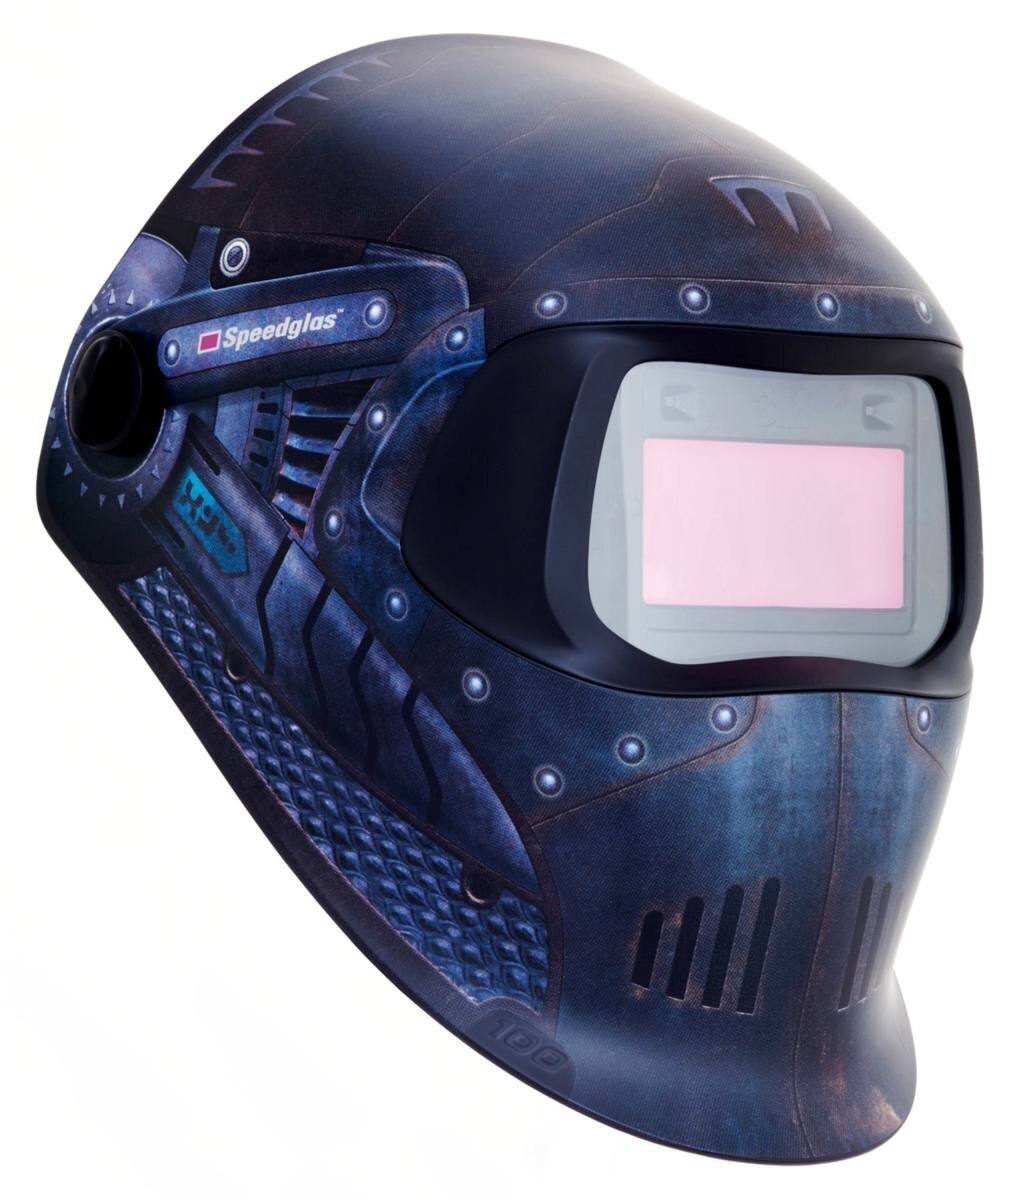 3M Speedglas 100V welding helmet Automatic welding helmet DIN 8-12 Mig "Trojan Warrior" #751620